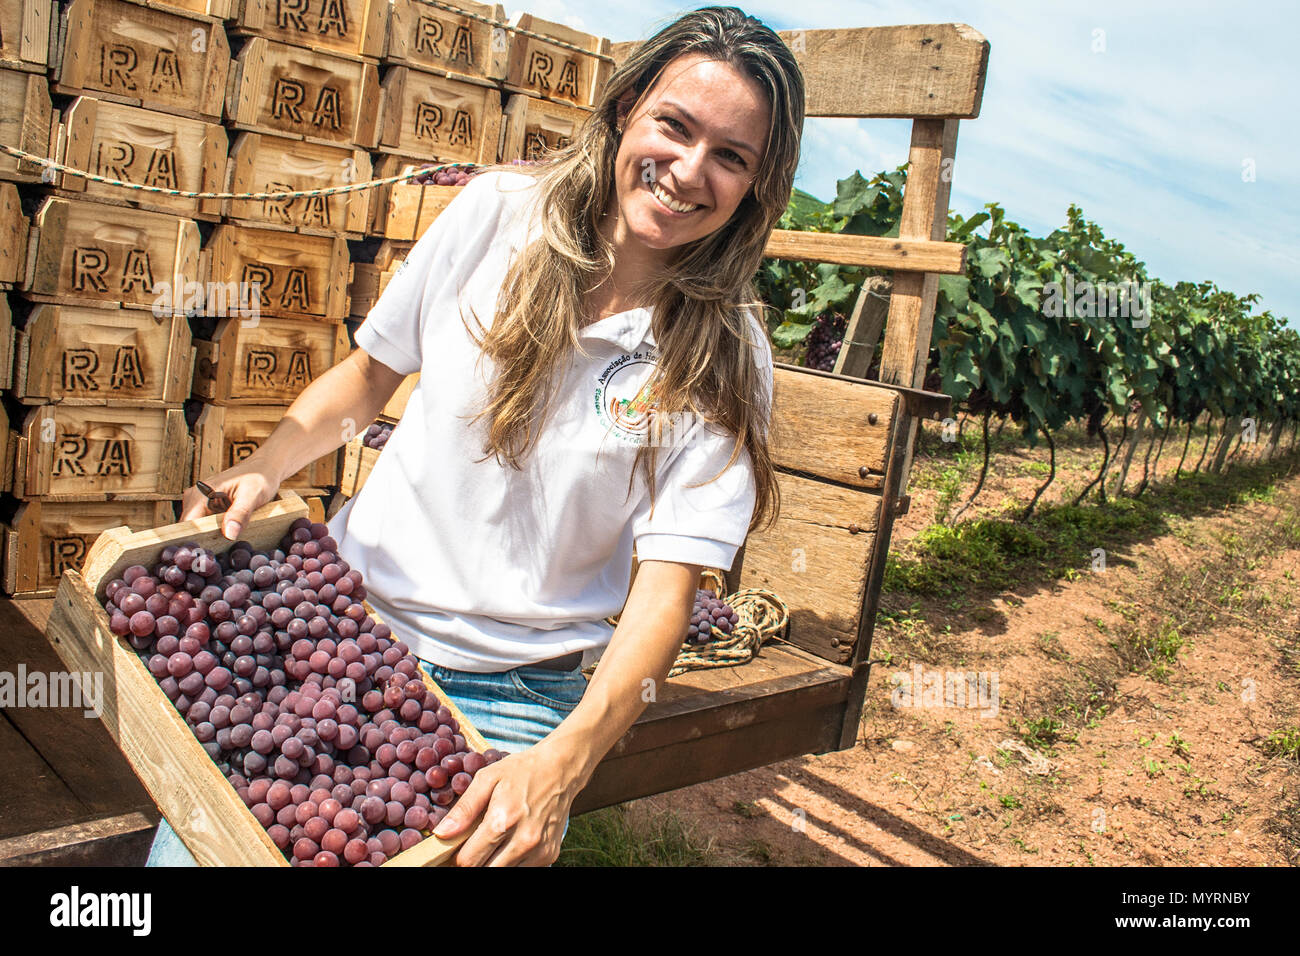 Jarinu, Sao Paulo, Brésil, le 14 décembre 2011. Portrait de femme sur un tracteur chargé avec des caisses en bois avec des raisins récoltés dans un vignoble Banque D'Images